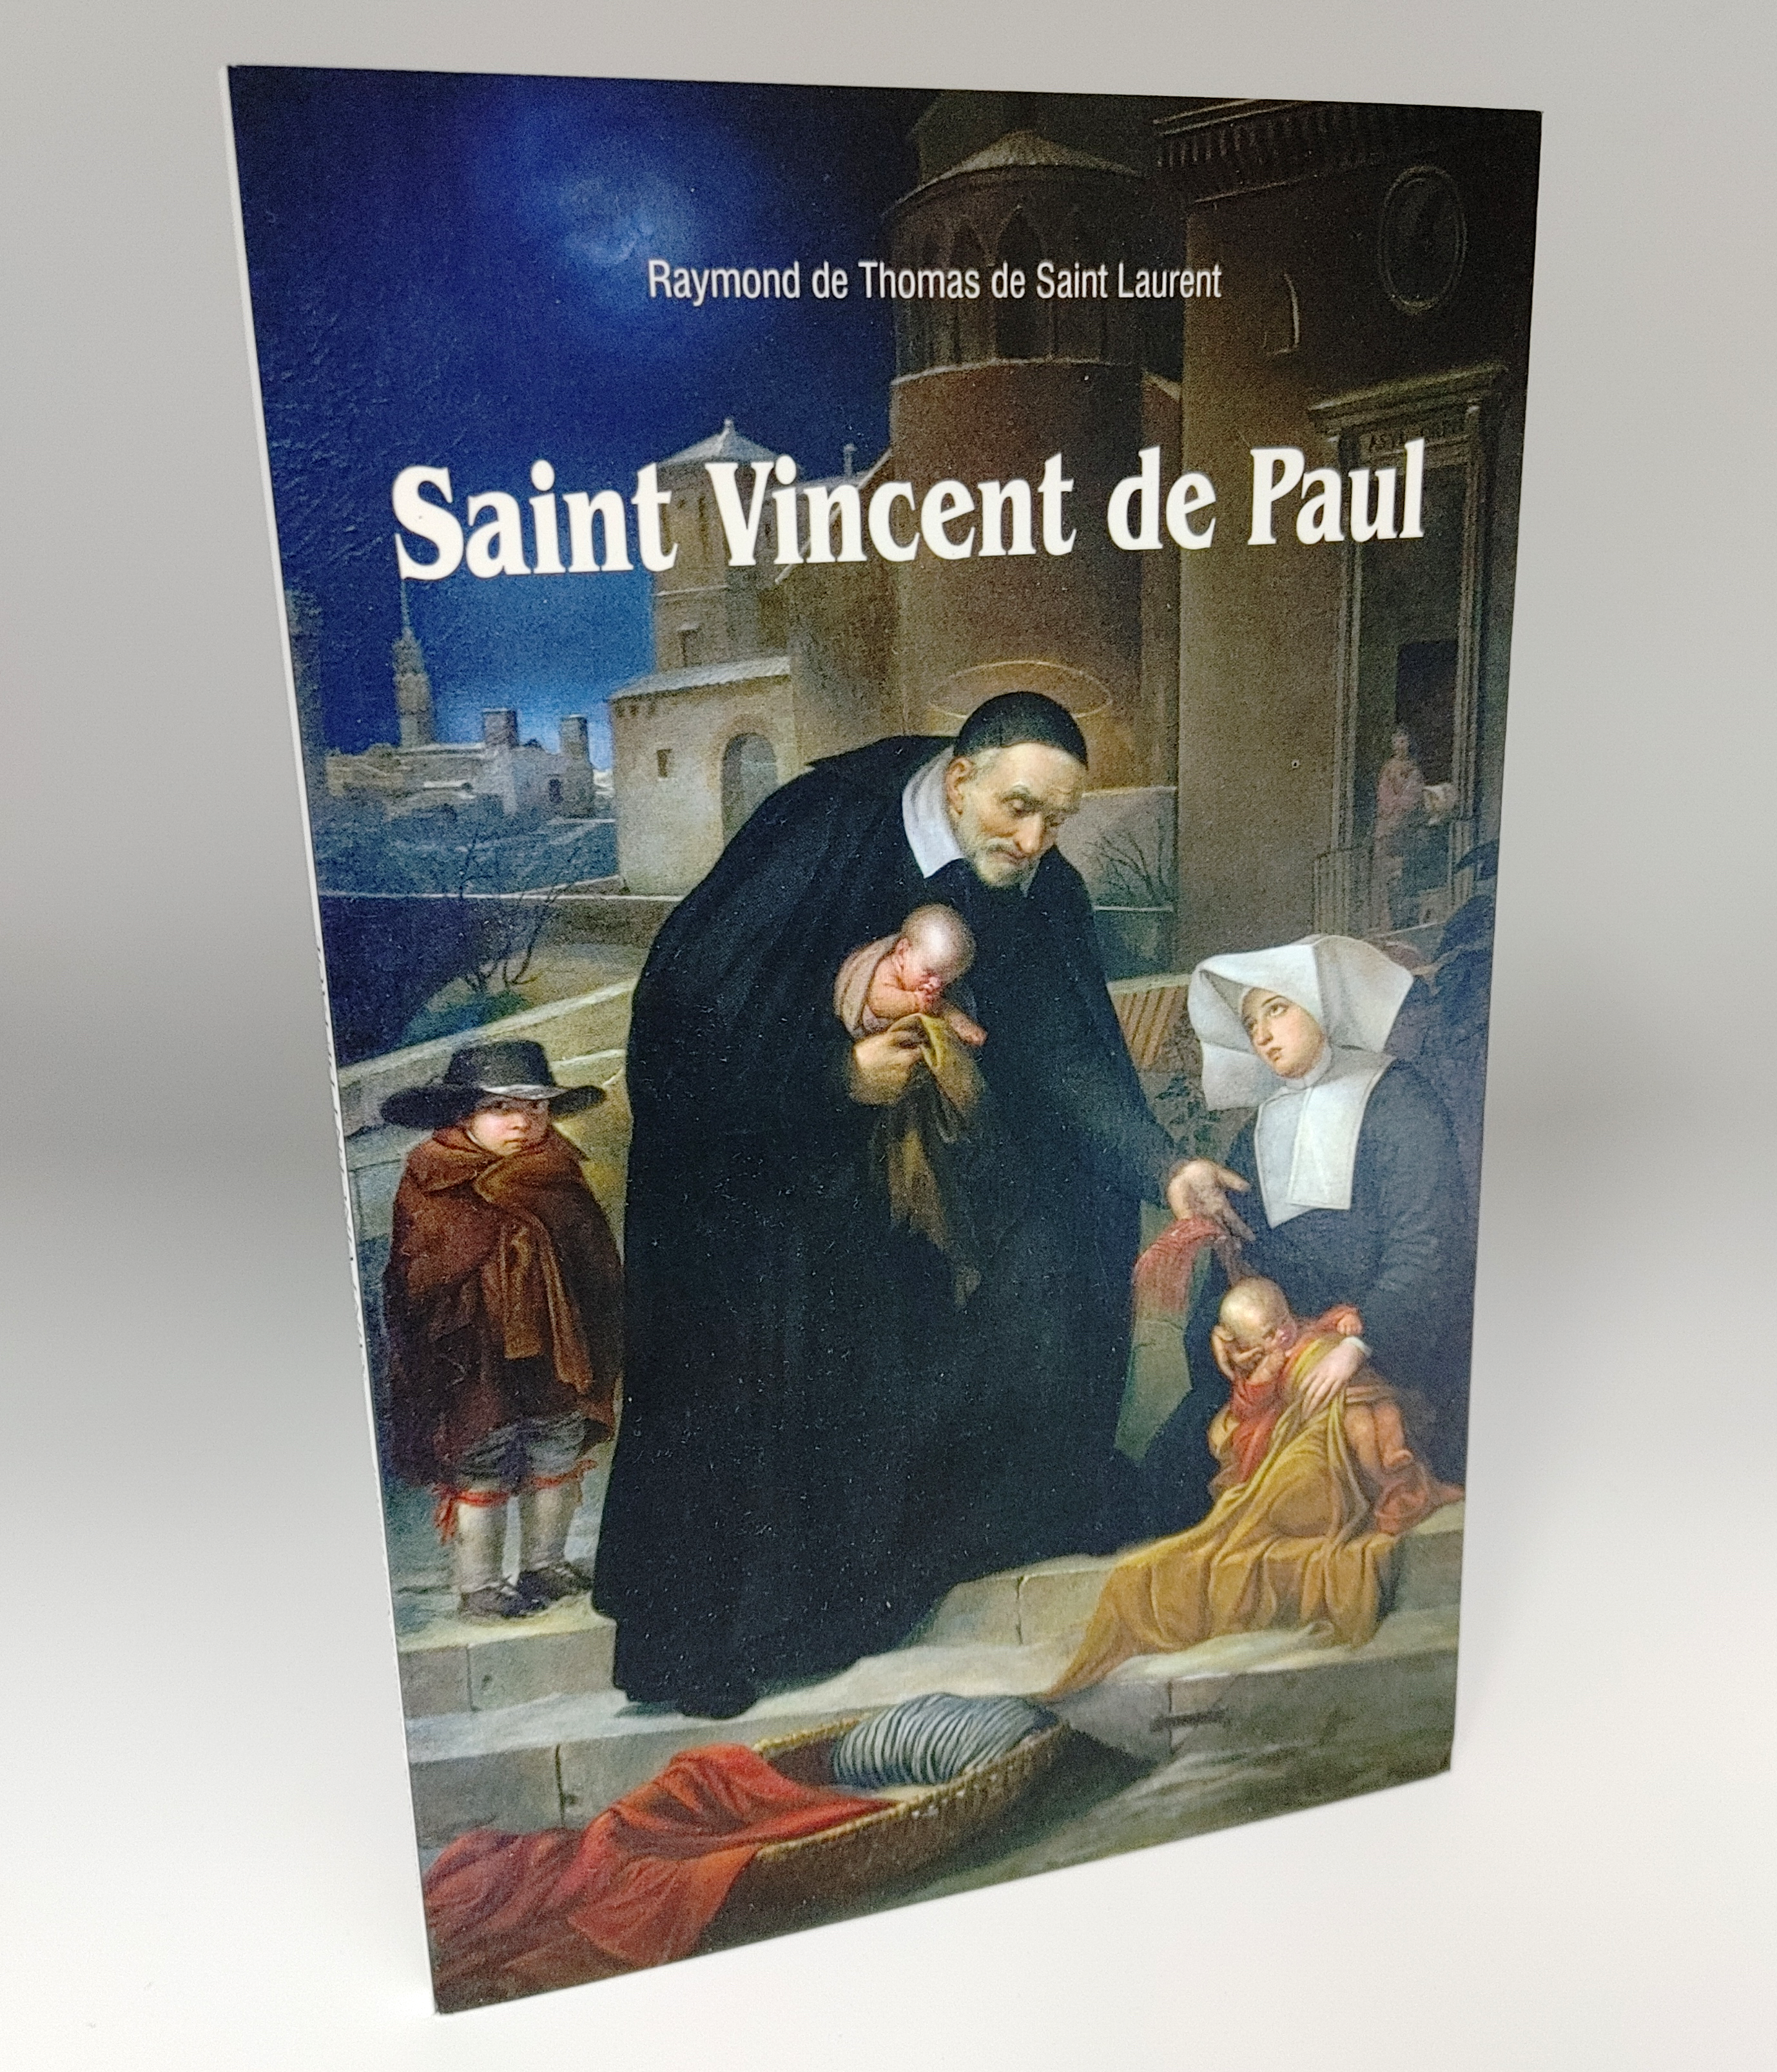 "Saint Vincent de Paul"